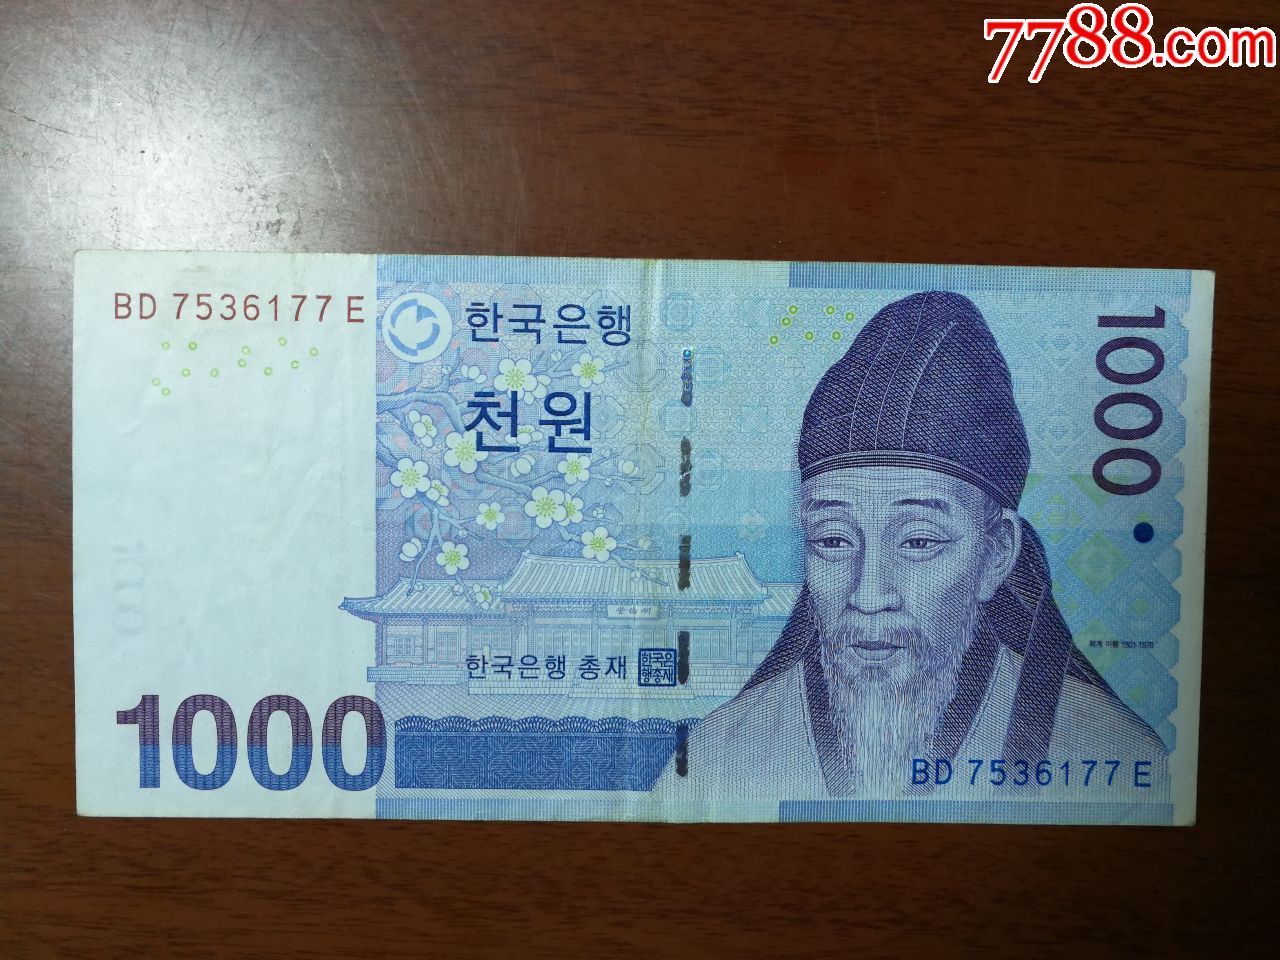 朝鲜1000元纸币图片-图库-五毛网